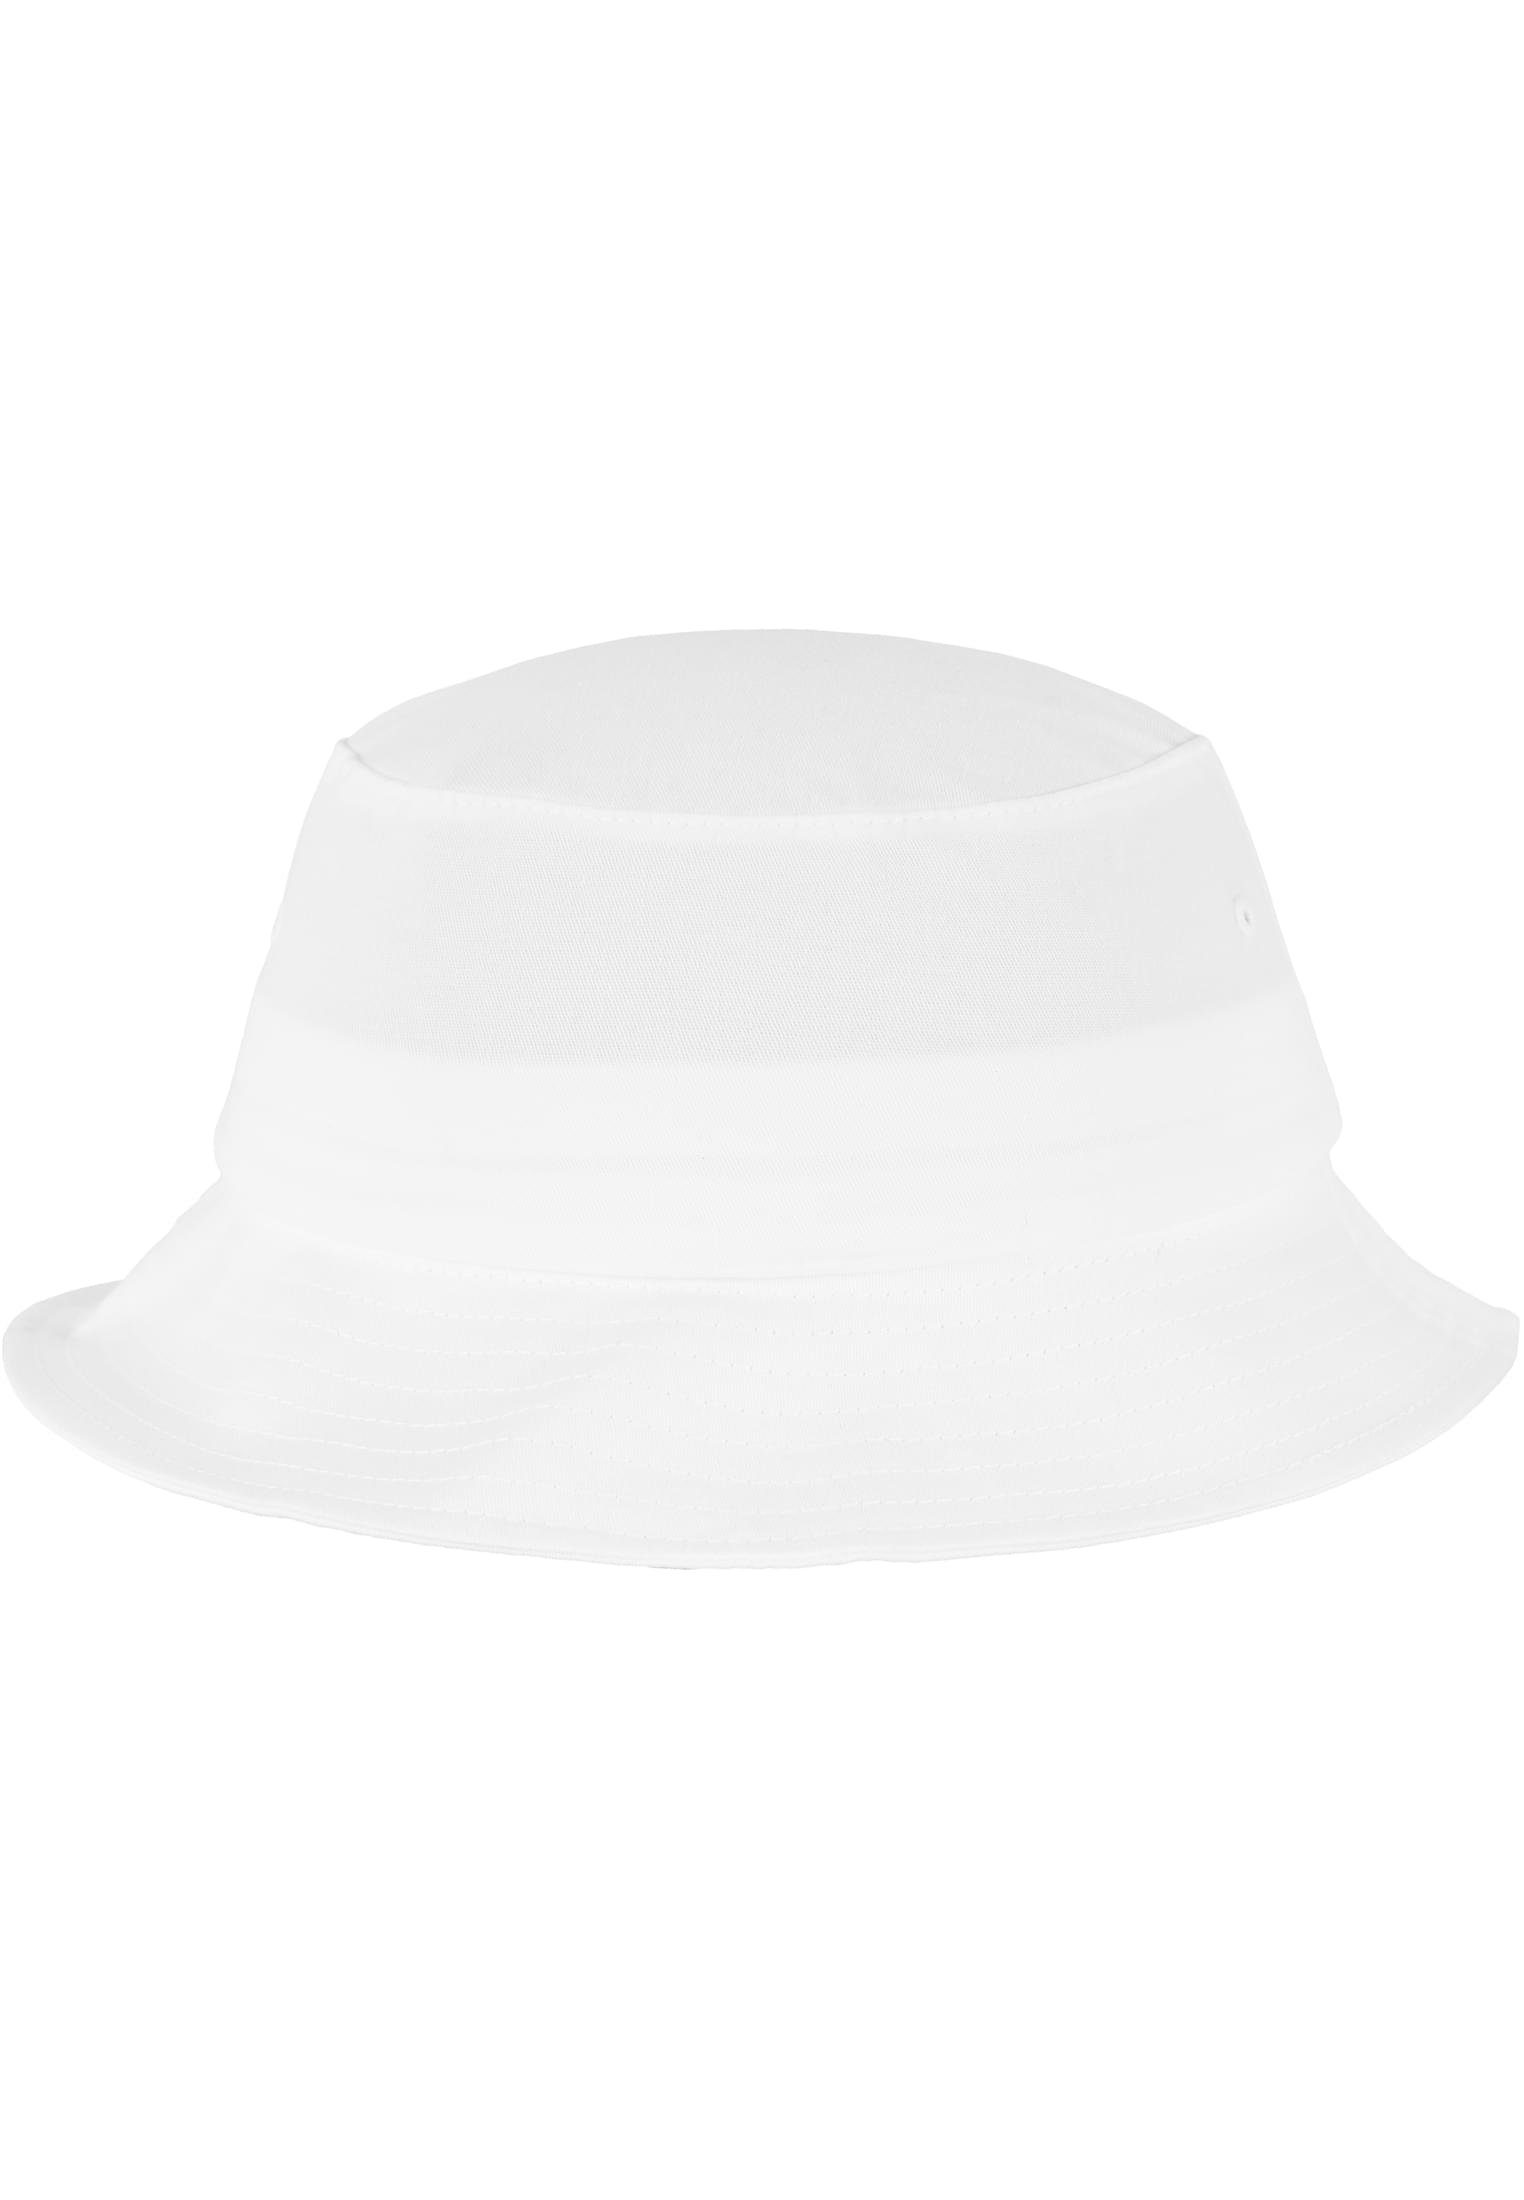 Vollständiges Produktsortiment! Cap Accessoires Bucket Hat white Flexfit Flexfit Twill Flex Cotton